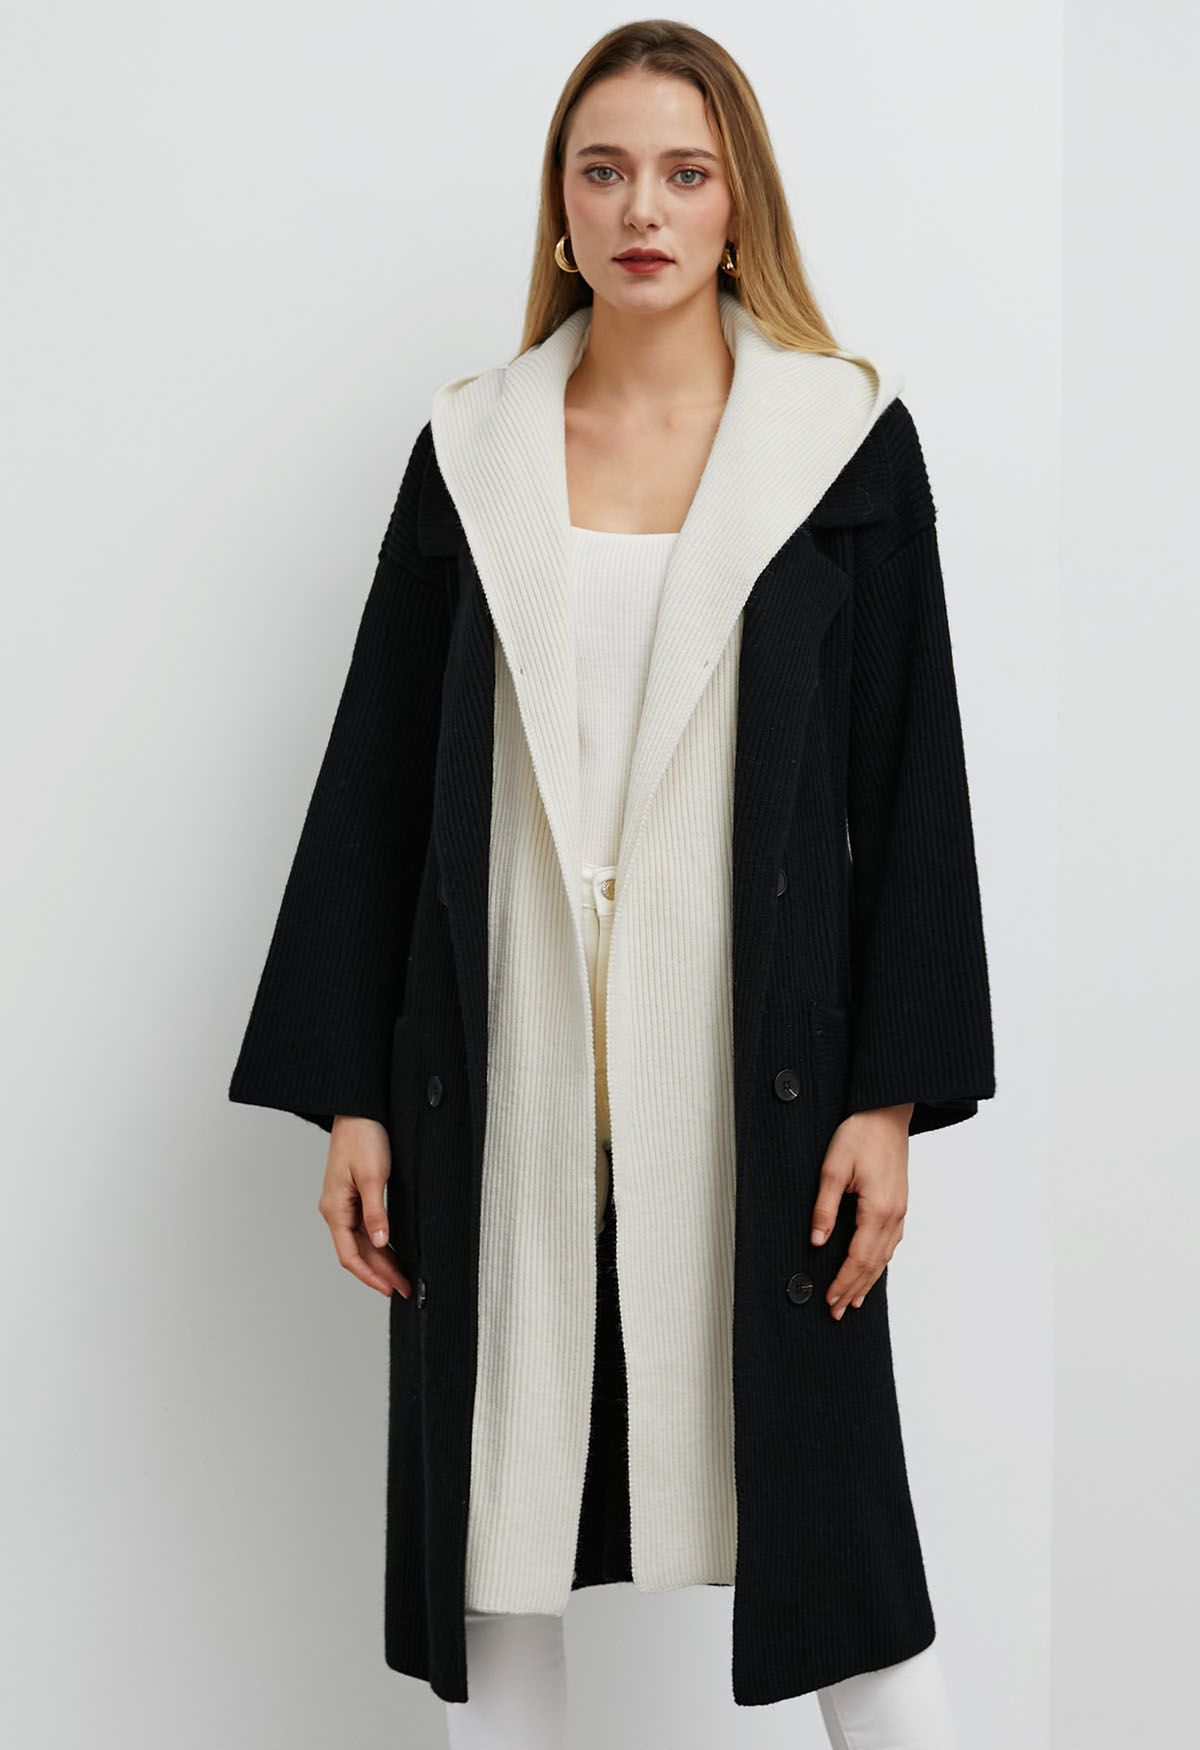 Kontrastierter, zweiteiliger, langer Mantel mit Kapuze in Schwarz